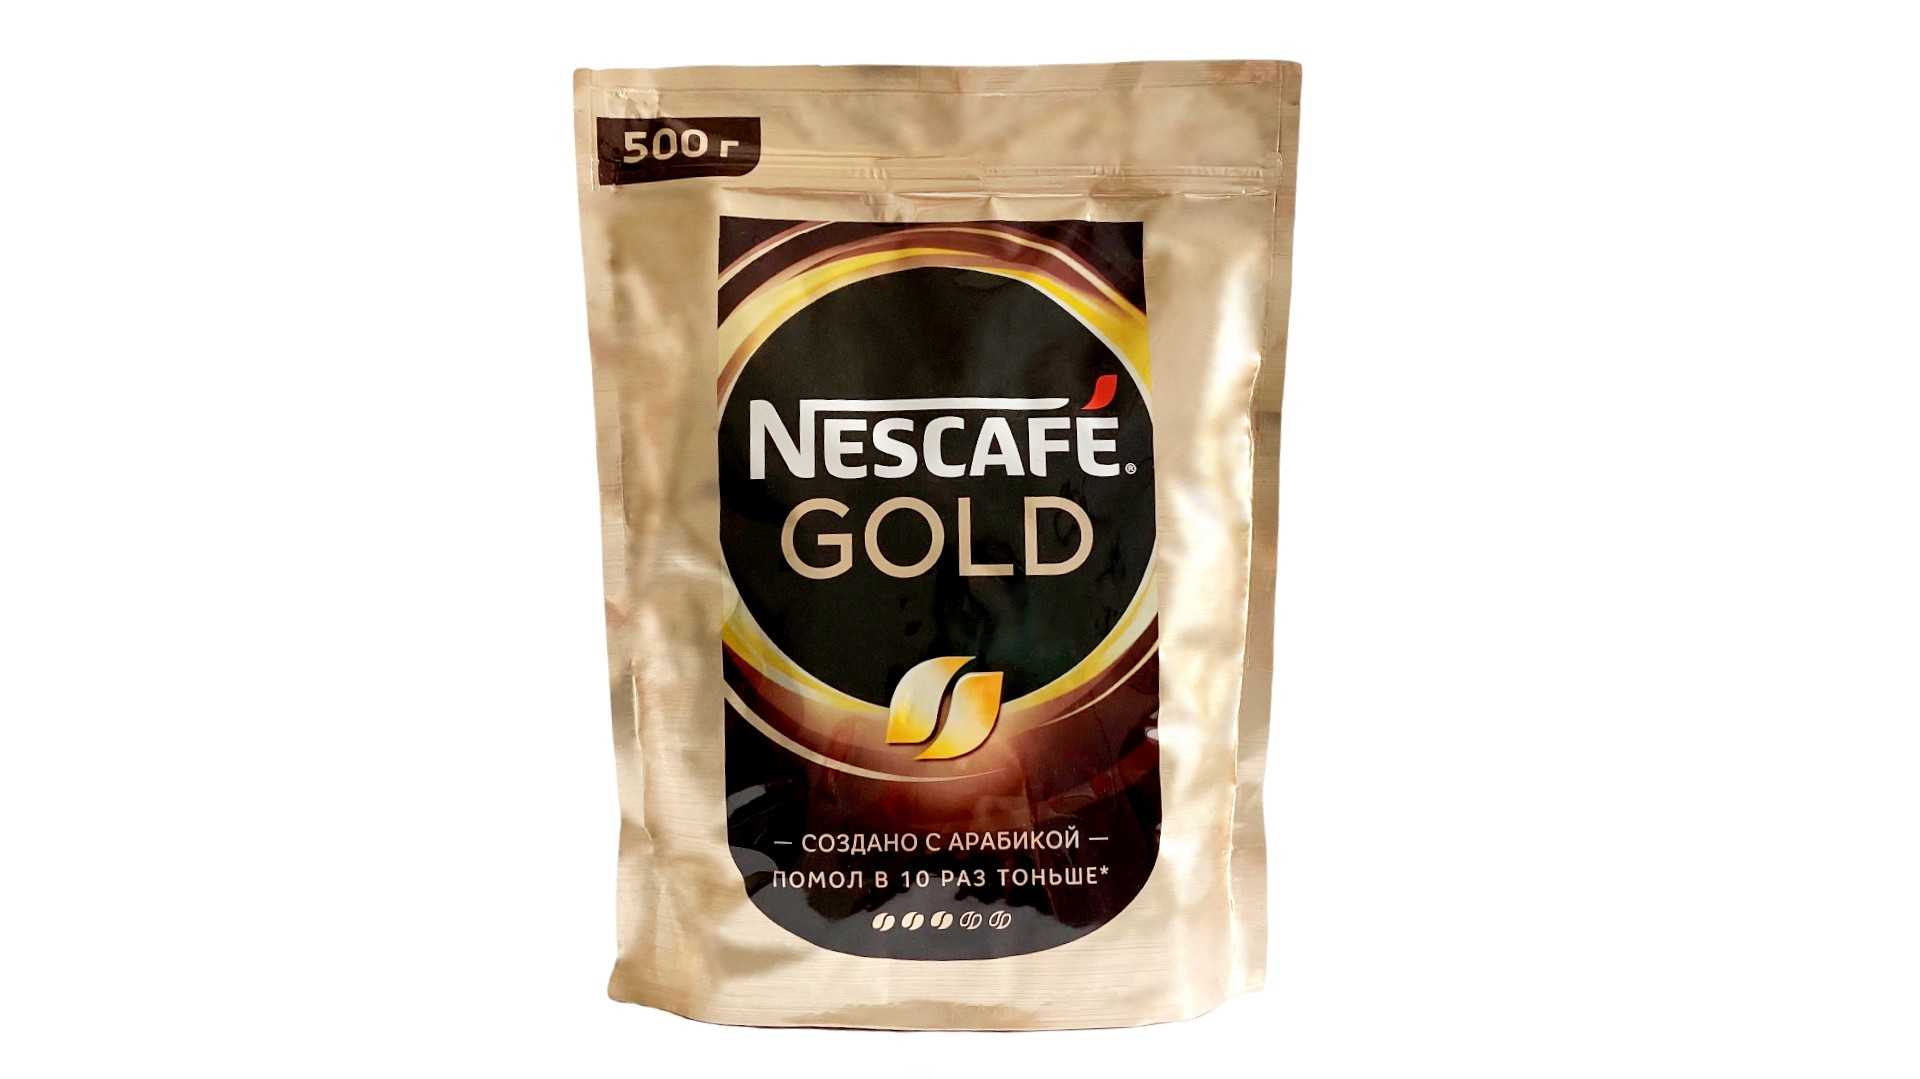 Nescafe gold пакет. Кофе растворимый Нескафе Голд 500г сублимированный. Кофе Нескафе Голд 500г. Кофе Nescafe Gold пакет 500 гр. Нескафе Голд пакет 190 грамм.